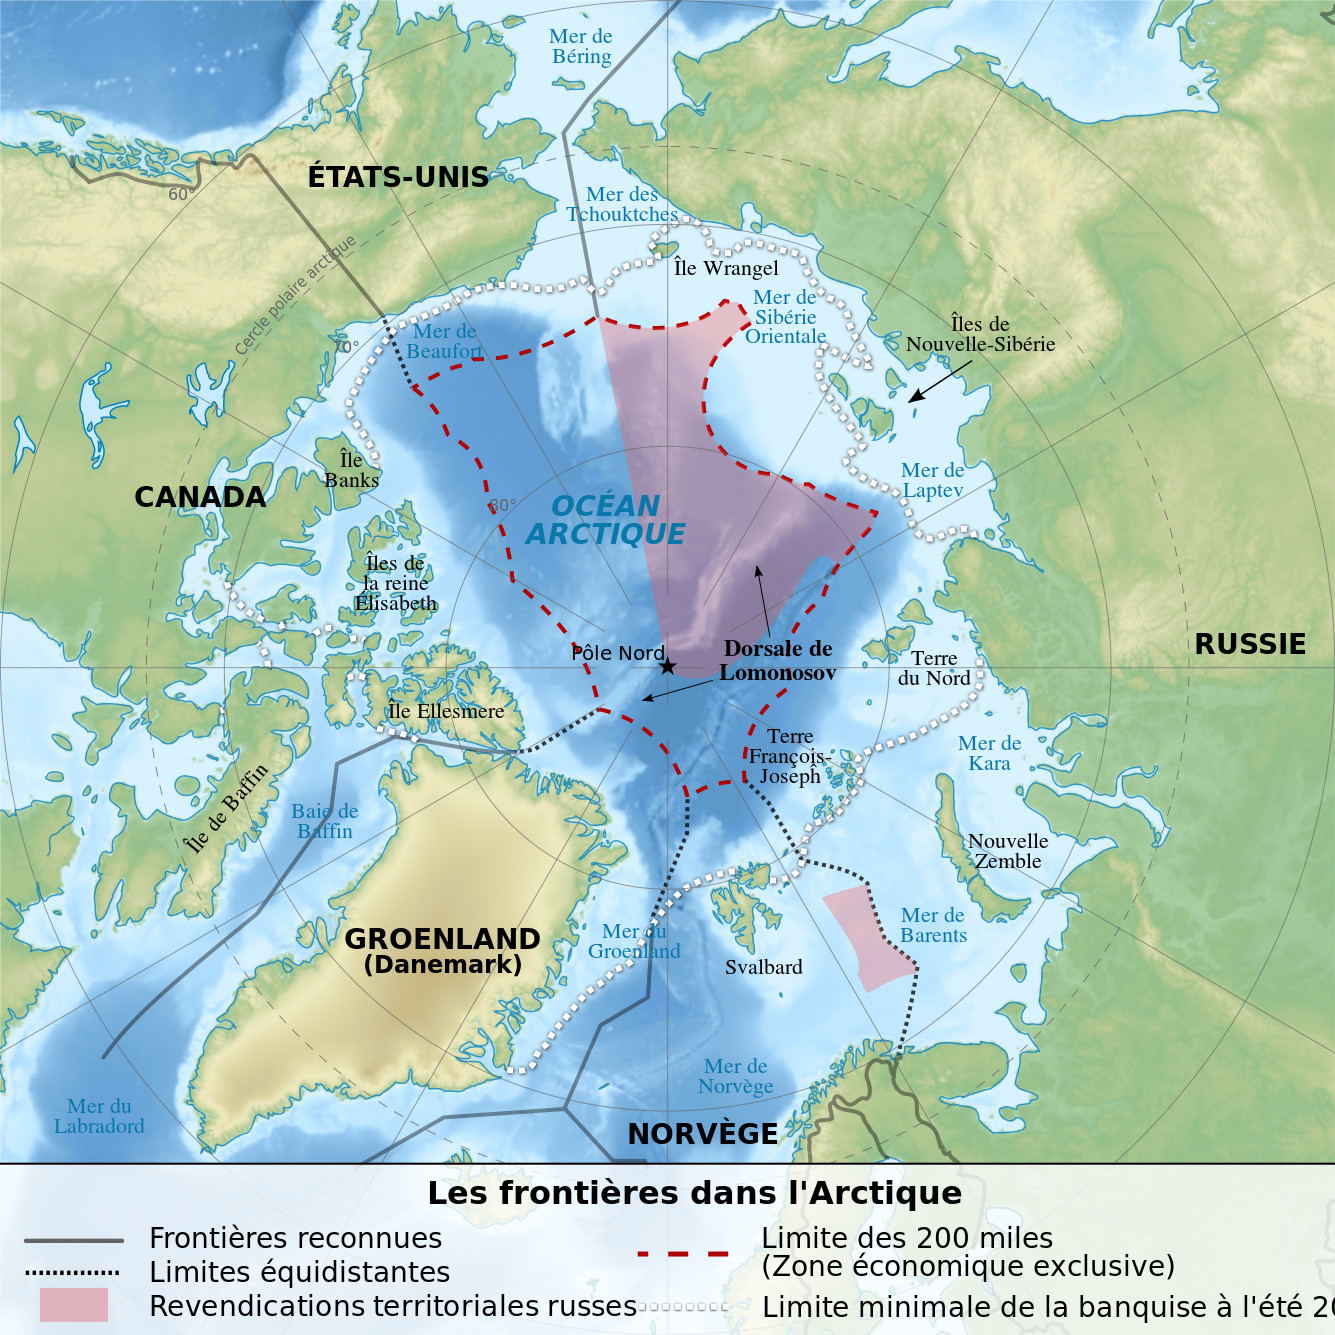 Карта на икономическите зони в Арктика, според Морската конвенция